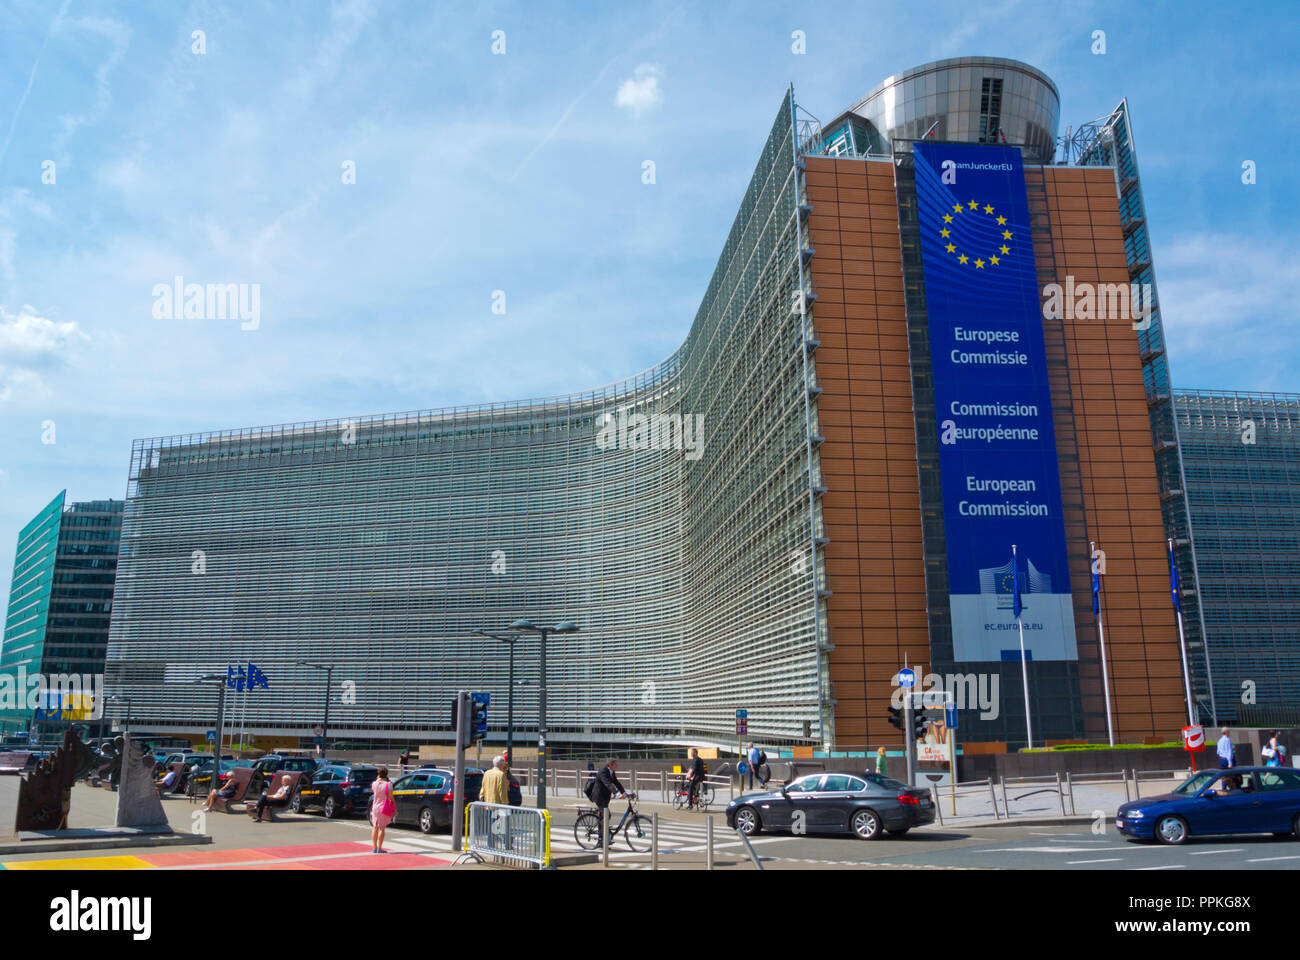 Berlaymont, European Commission headquarters, European Quarter, Brussels, Belgium Stock Photo